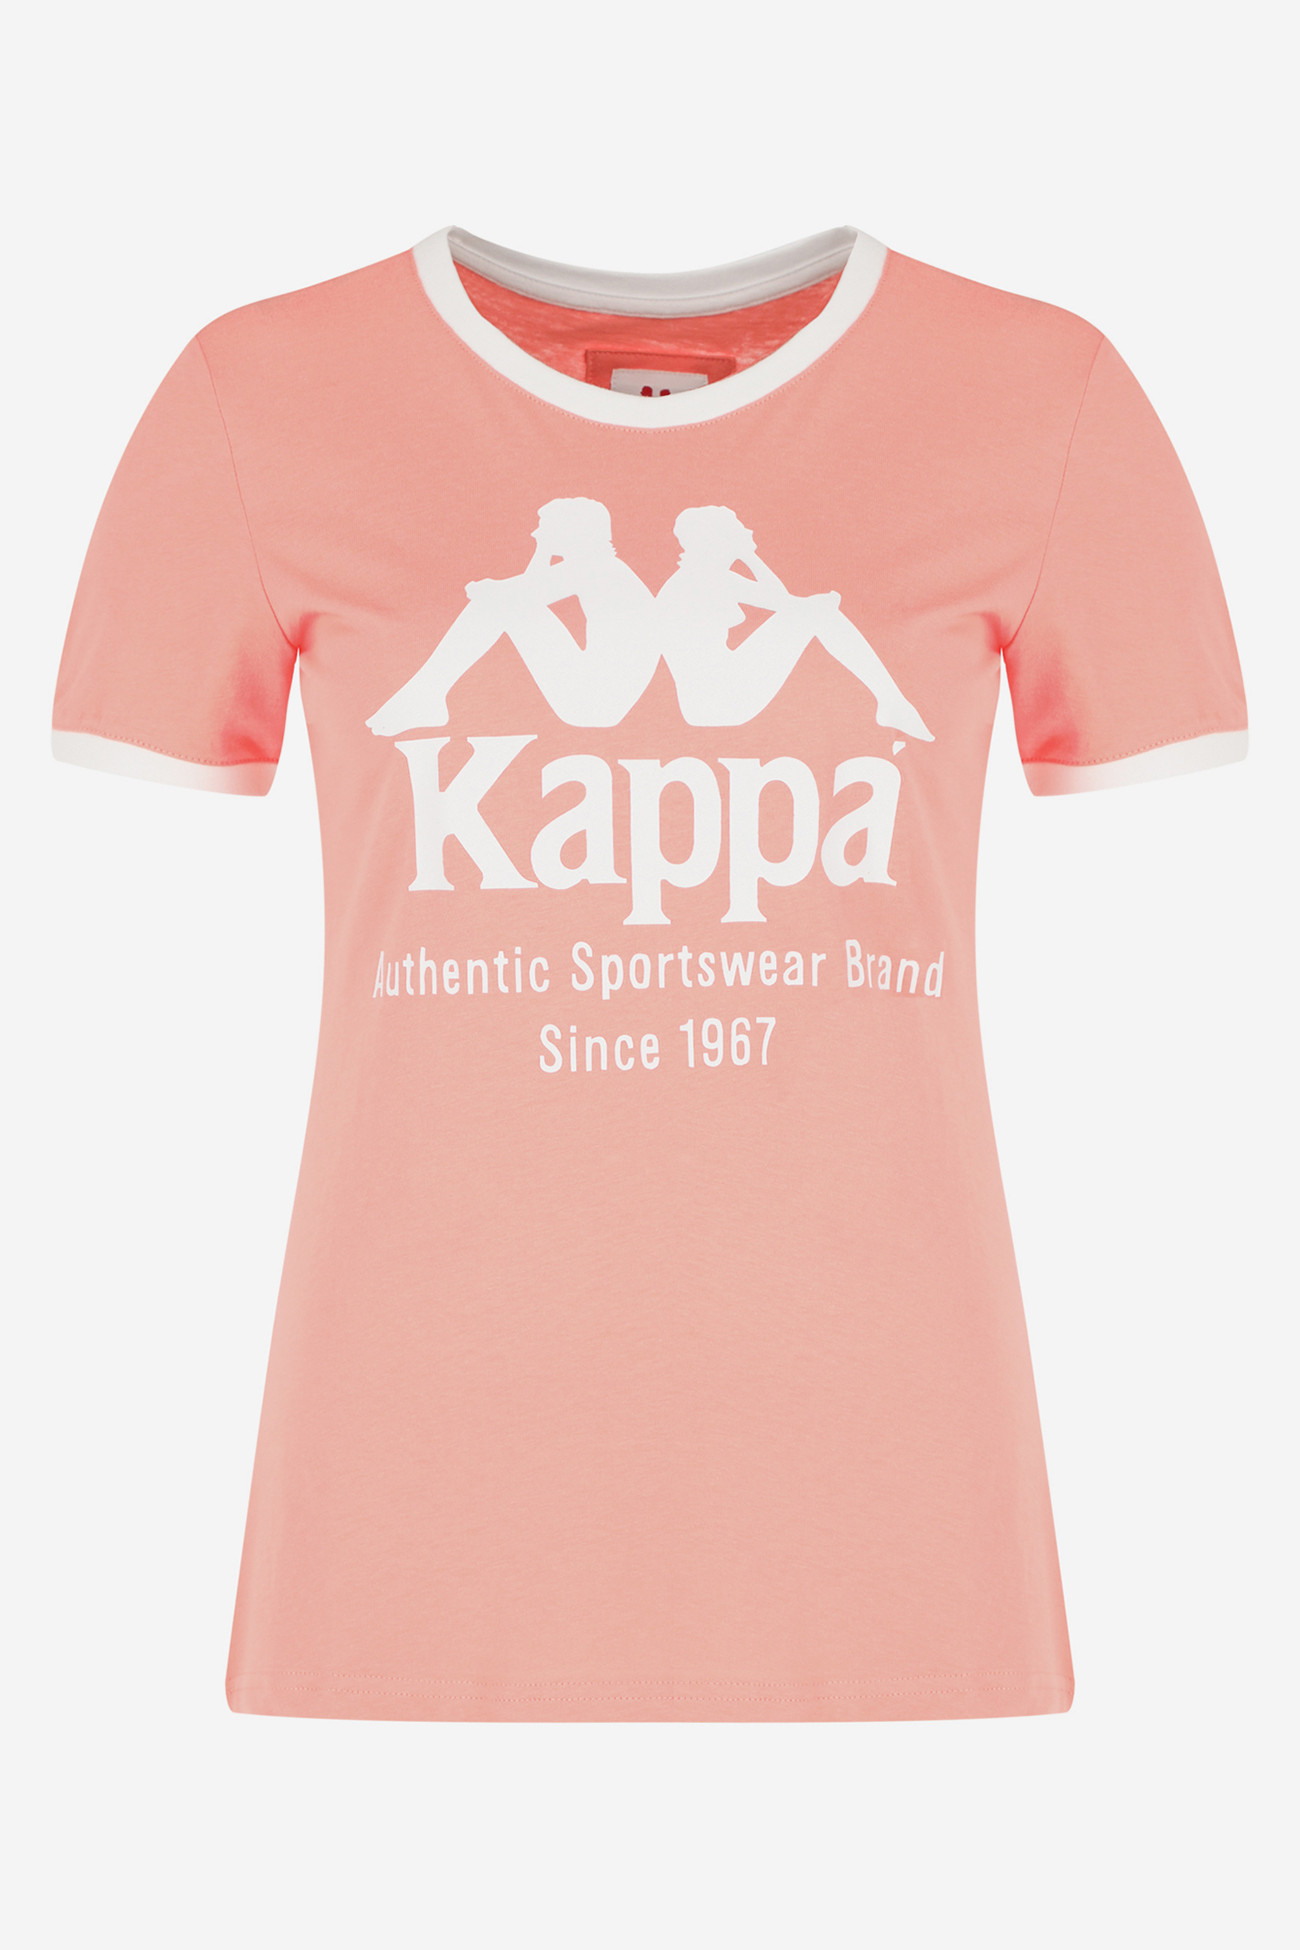 Футболка женская Kappa T-shirt розовая 110738-R0 изображение 5